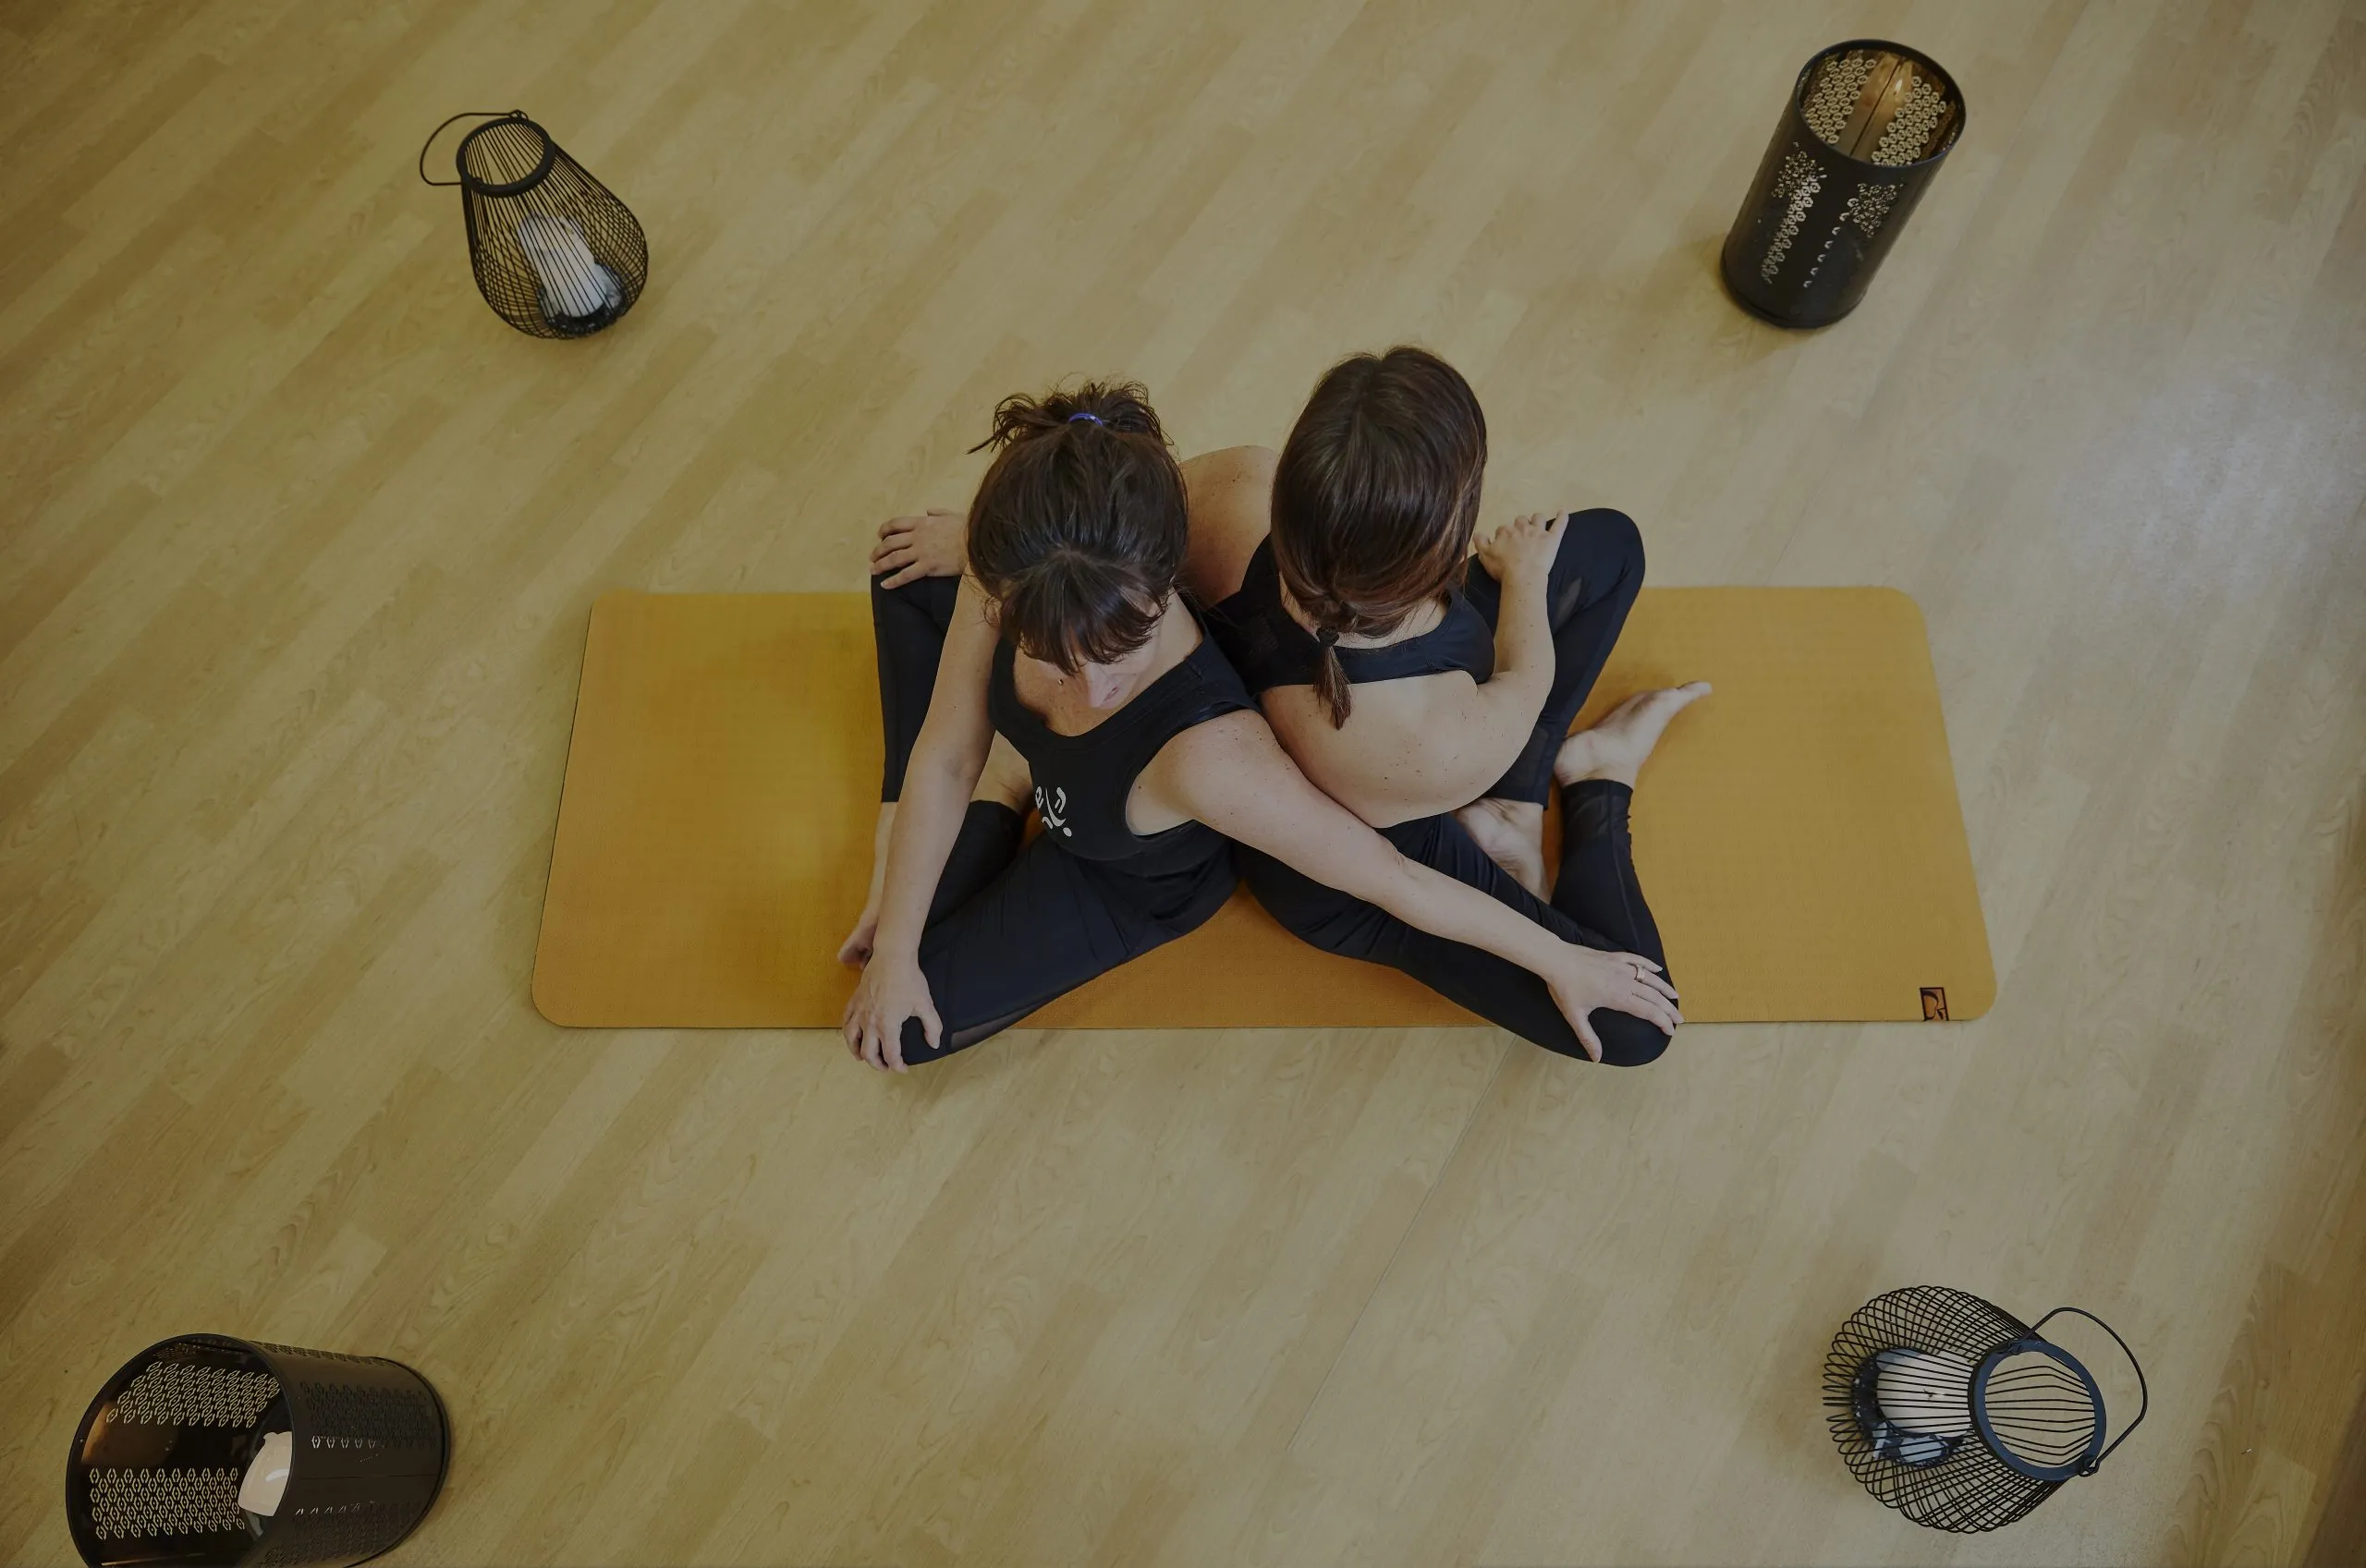 två kvinnor tränar yoga tillsammans